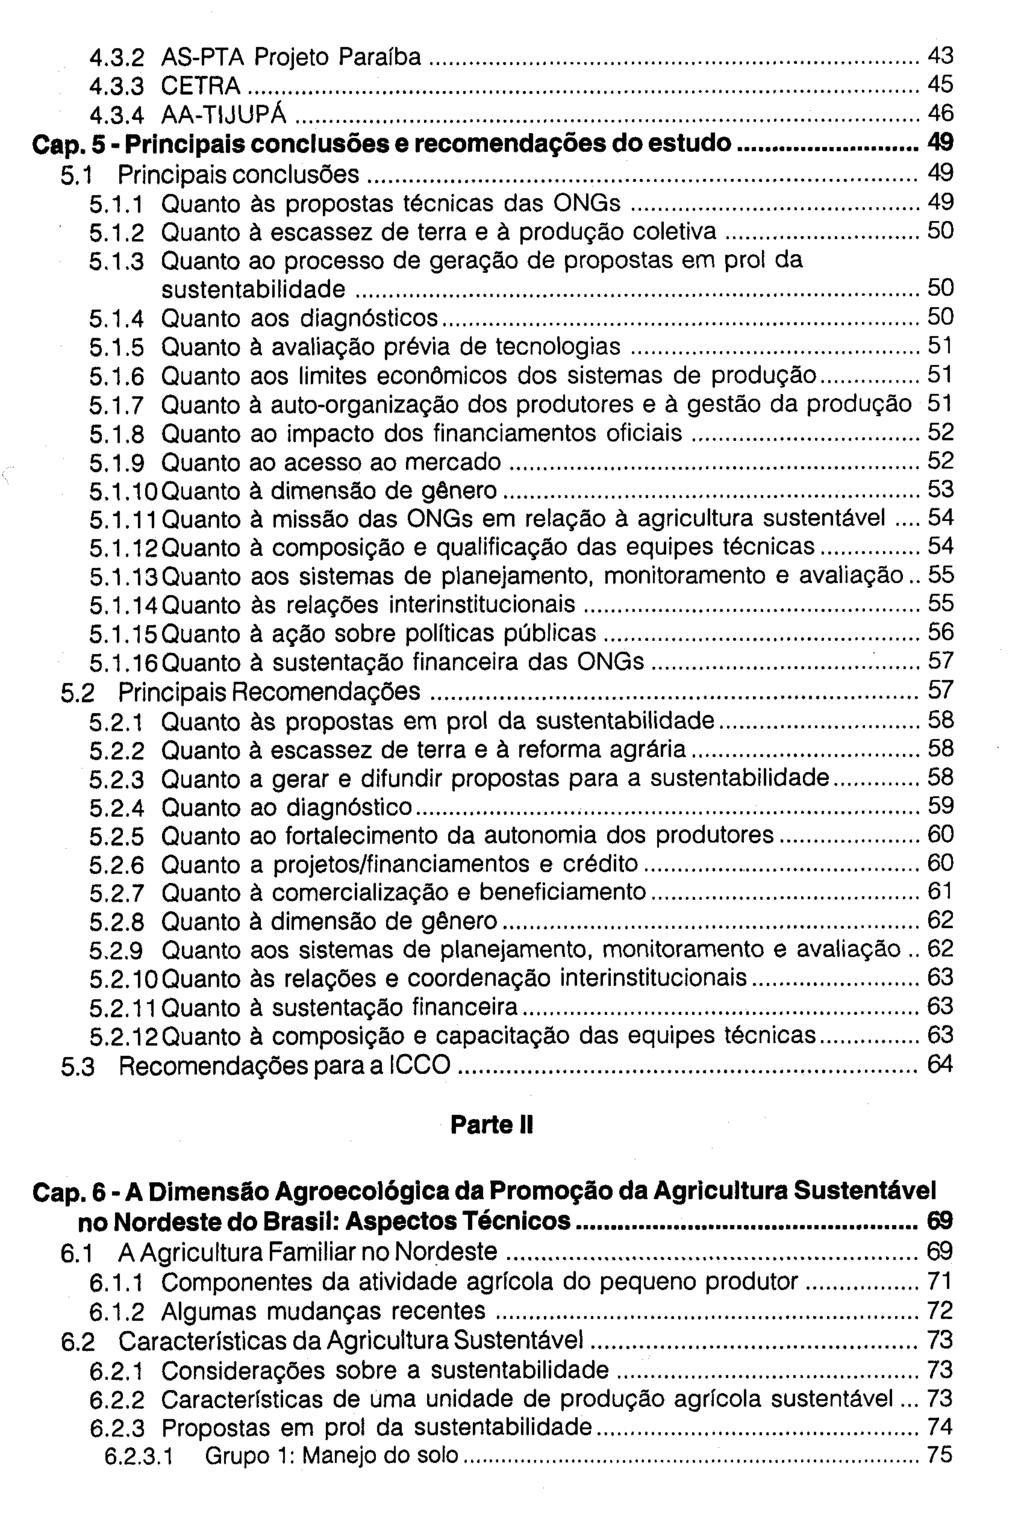 4.3.2 AS-PTA Projeto Paraíba 43 4.3.3 CETRA 45 4.3.4 AA-TIJUPÁ 46 Cap. 5 - Principais conclusões e recomendações do estudo 49 5.1 Principais conclusões 49 5.1.1 Quanto às propostas técnicas das ONGs 49 5.